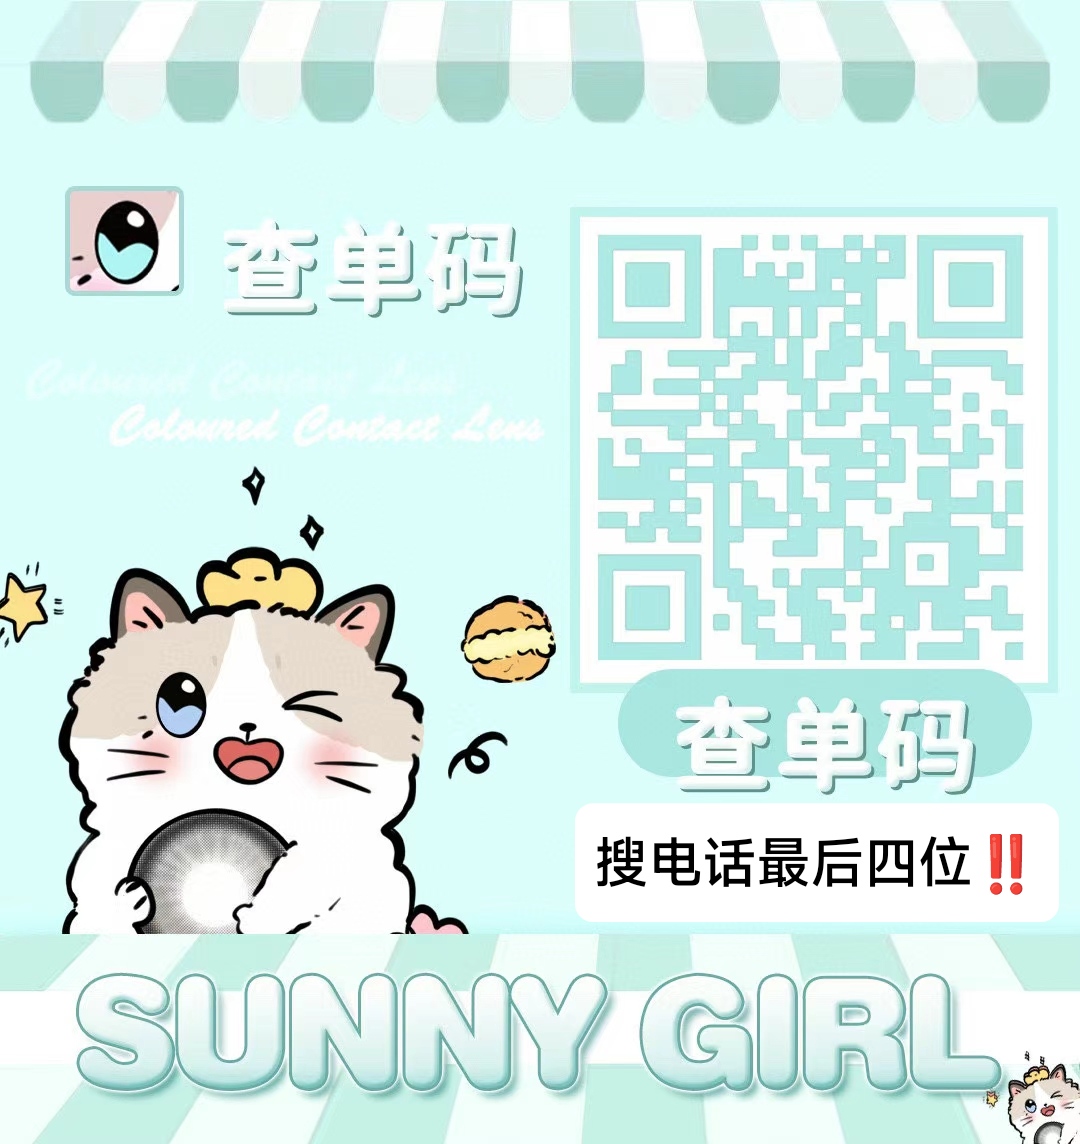 【半年抛】Sunnygirl 开春上新特别企划 流量黑马人气款集结号 - VVCON美瞳网